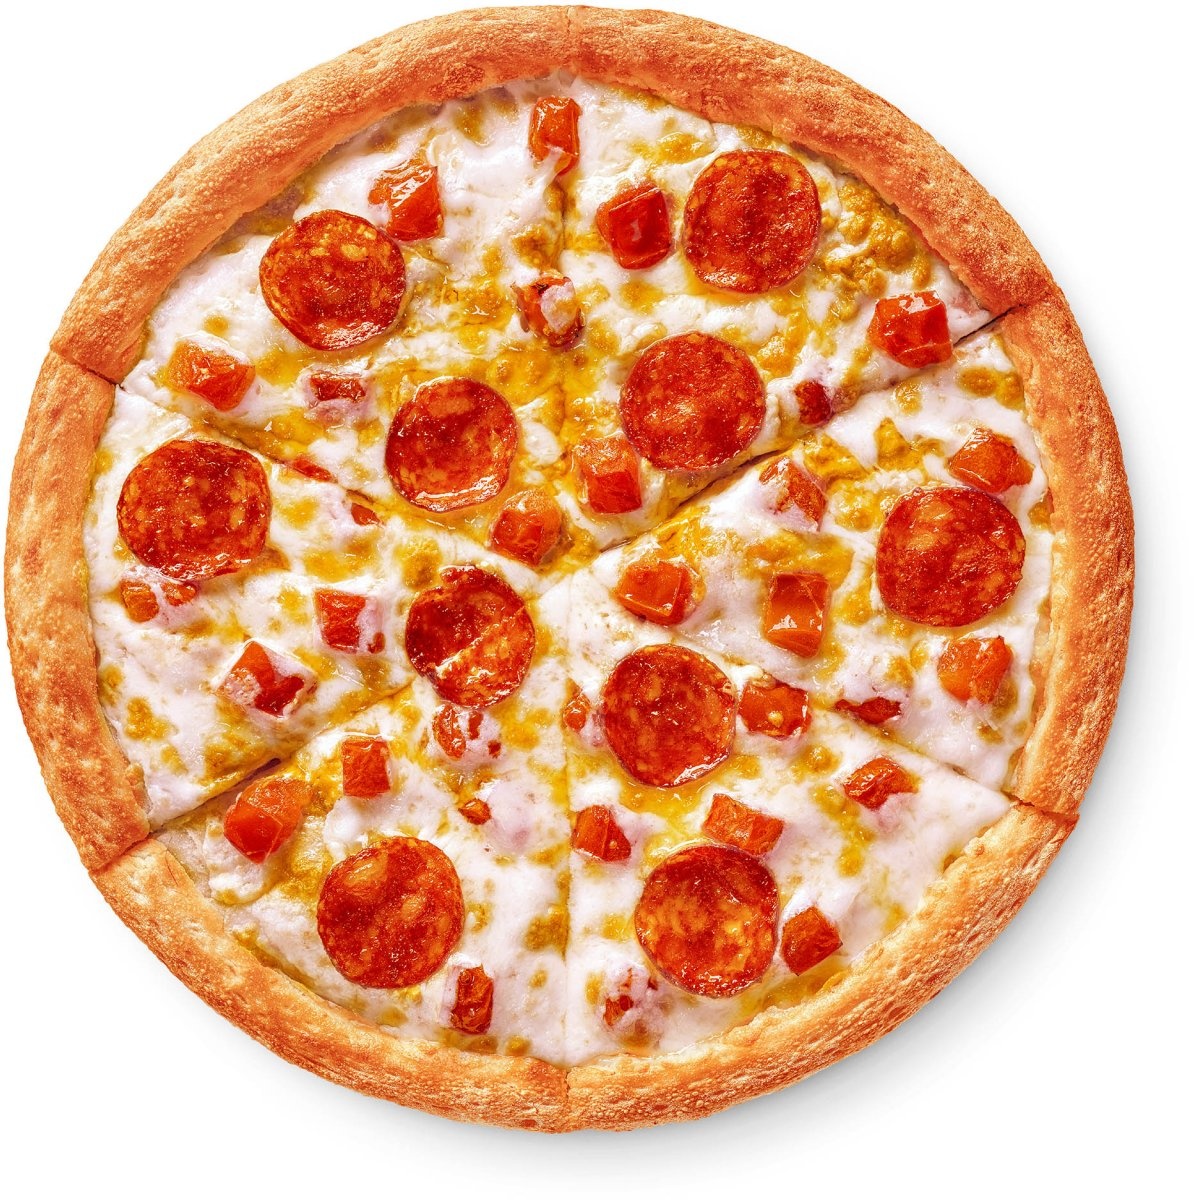 состав додо пиццы пепперони фото 102